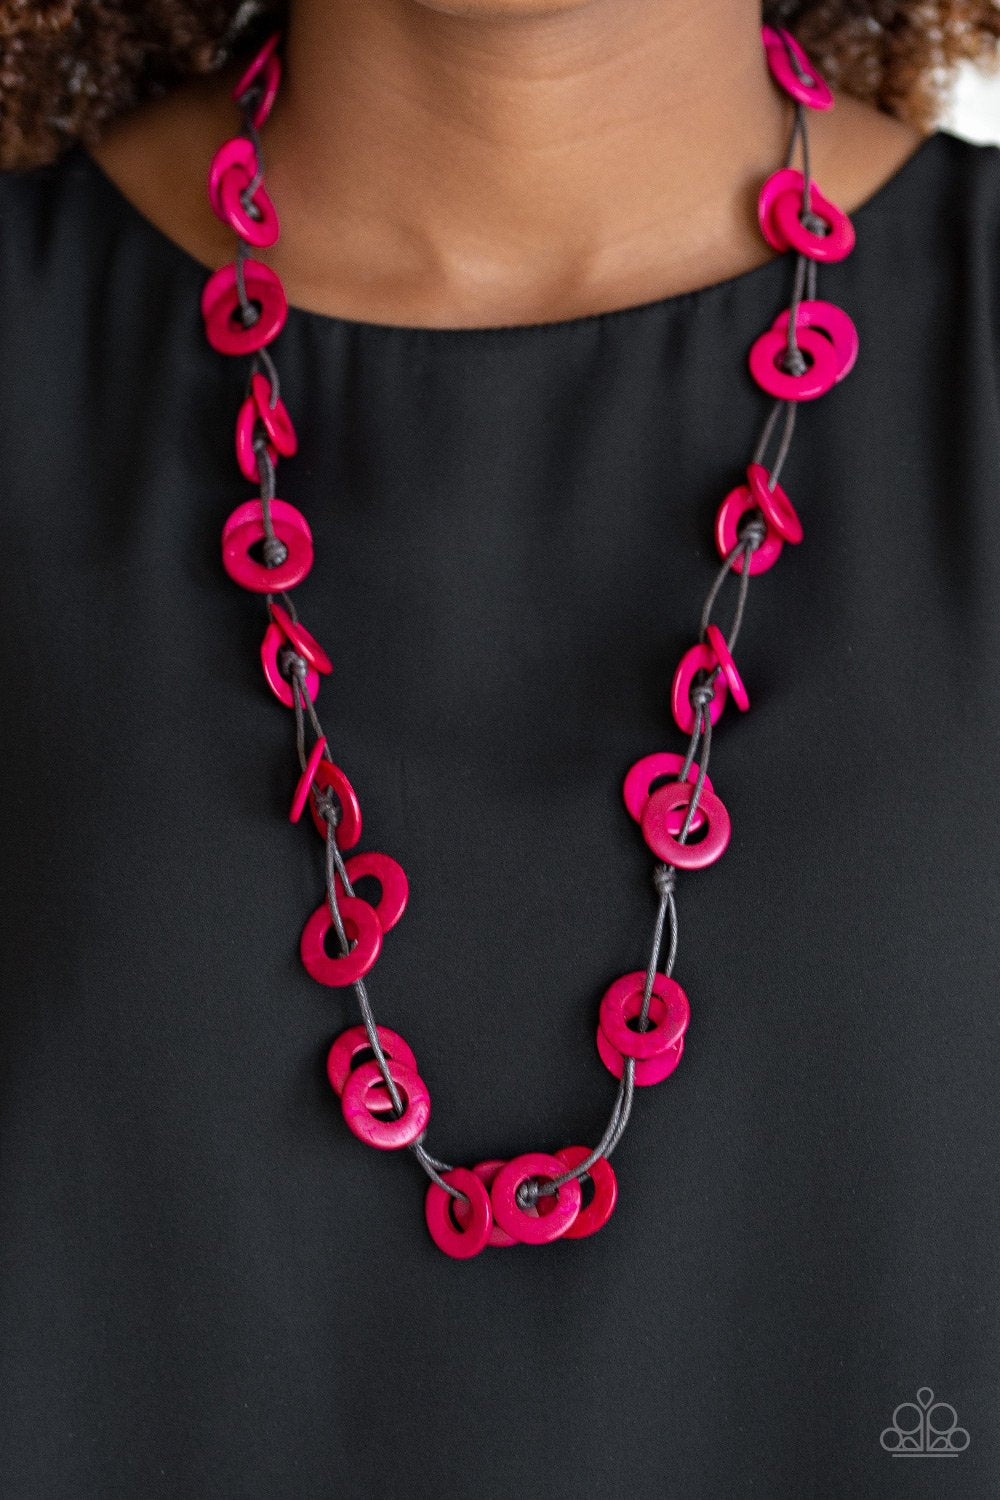 Waikiki Winds - Pink wood necklace